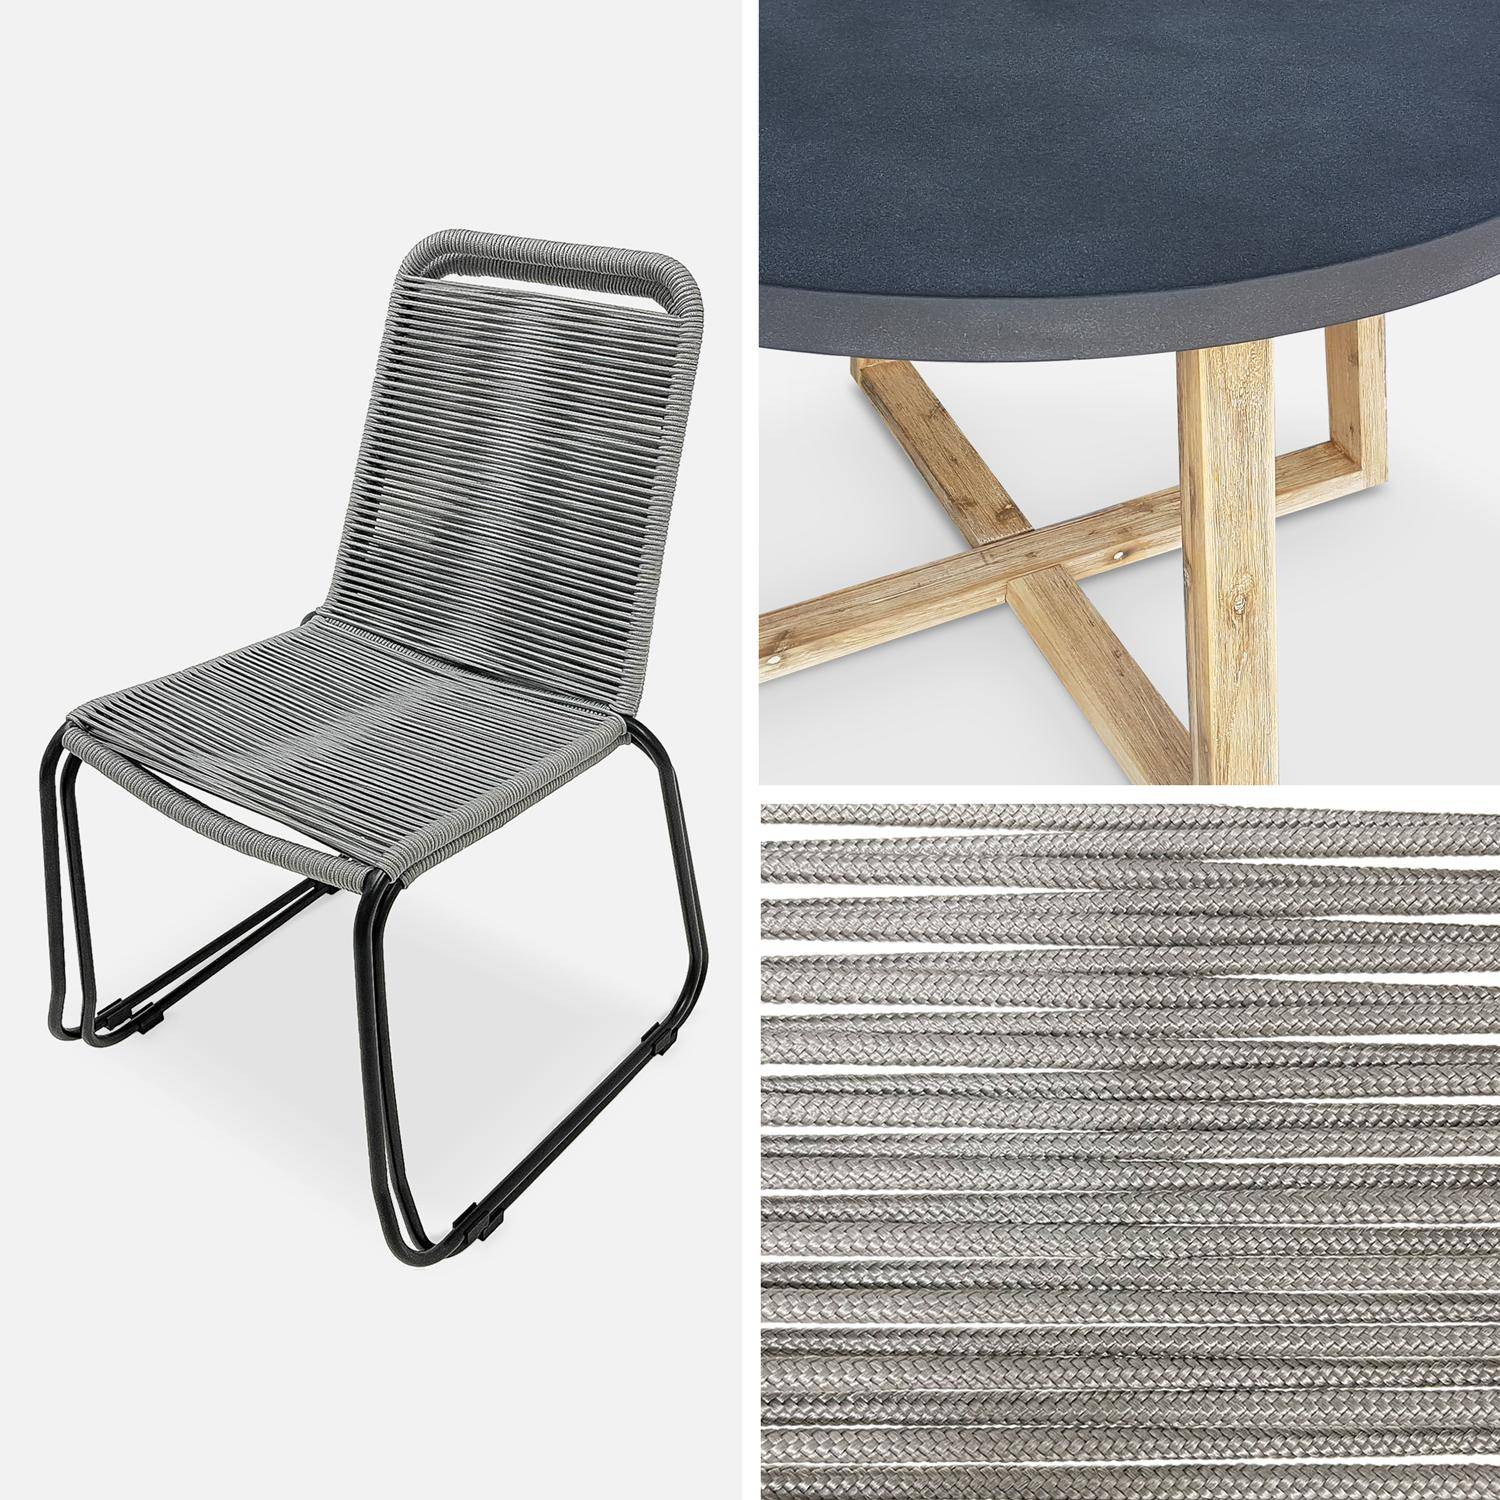 Table de jardin ronde en fibre de ciment Ø120cm Borneo et chaises de jardin Brasilia en corde gris clair empilables Photo4